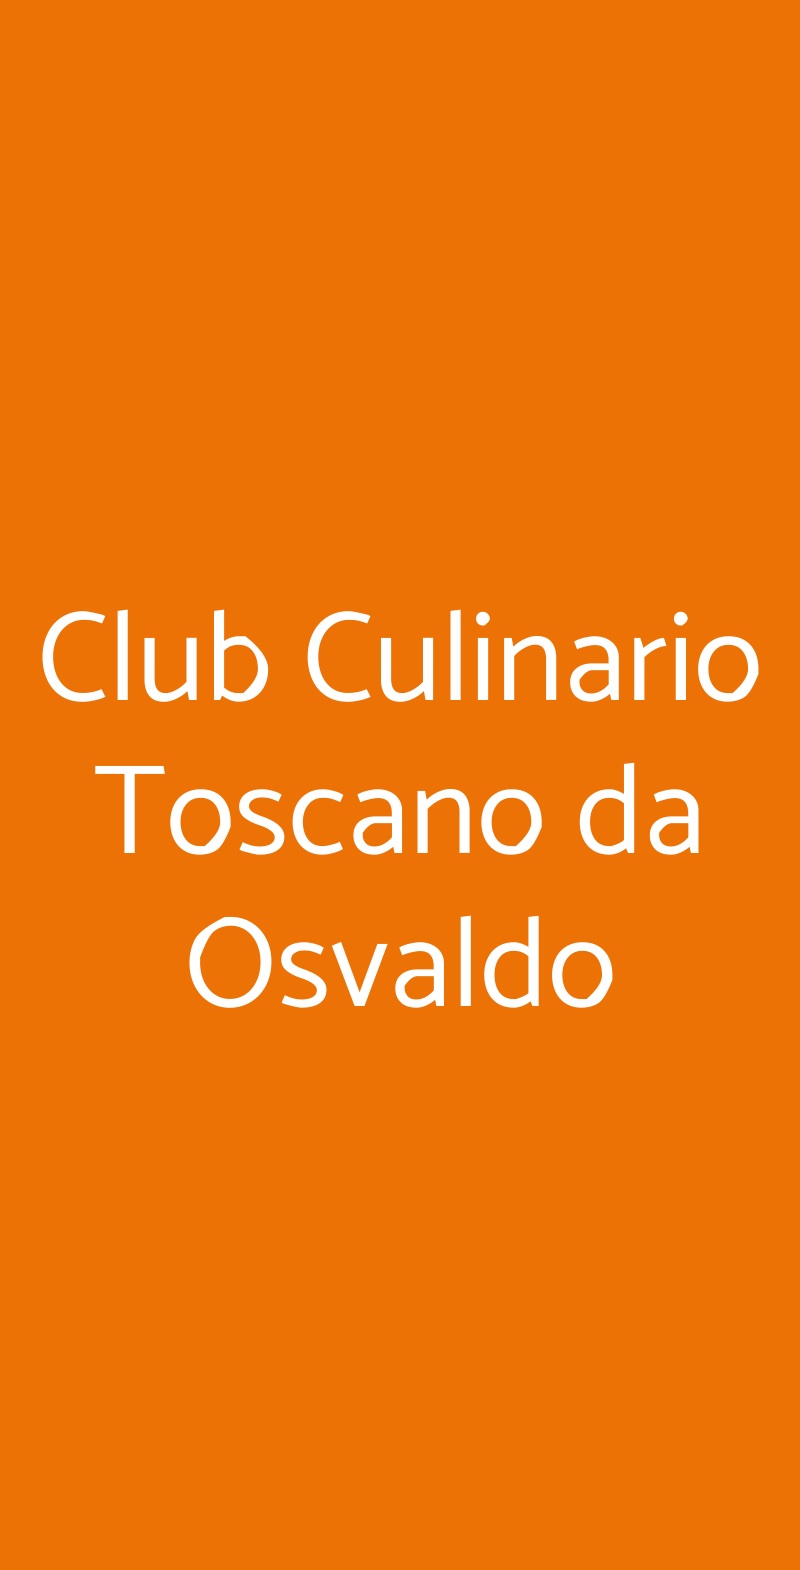 Club Culinario Toscano da Osvaldo Firenze menù 1 pagina